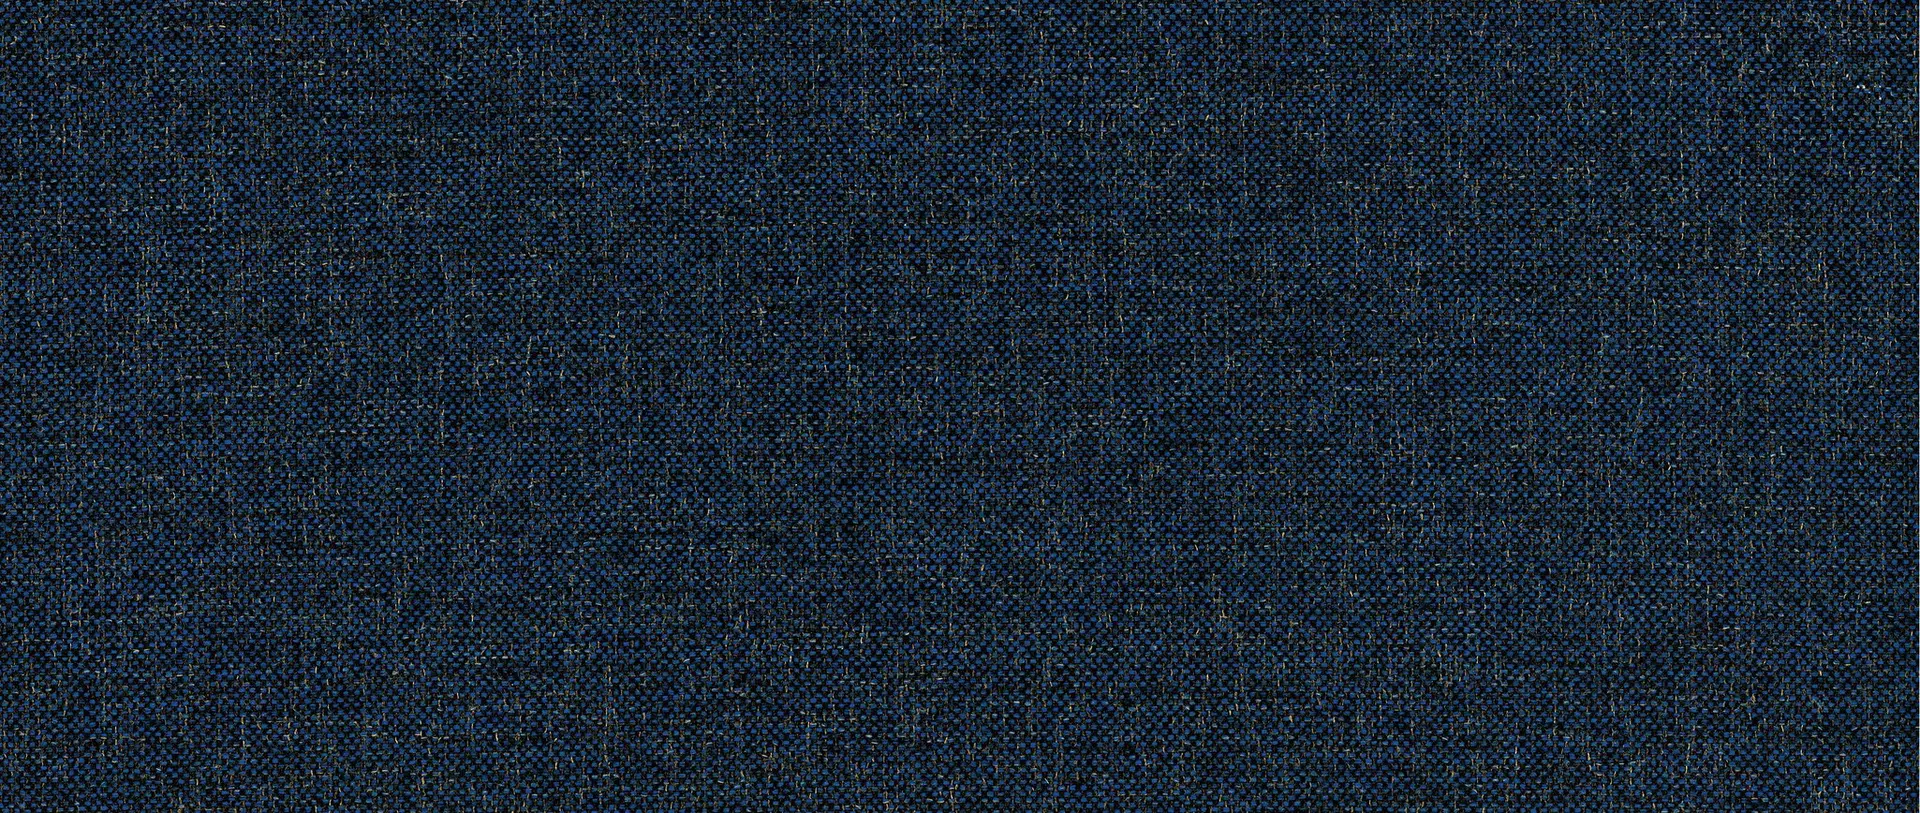 Boxspringbett MYNAP Schlaraffia Textil 184 x 115 x 213 cm